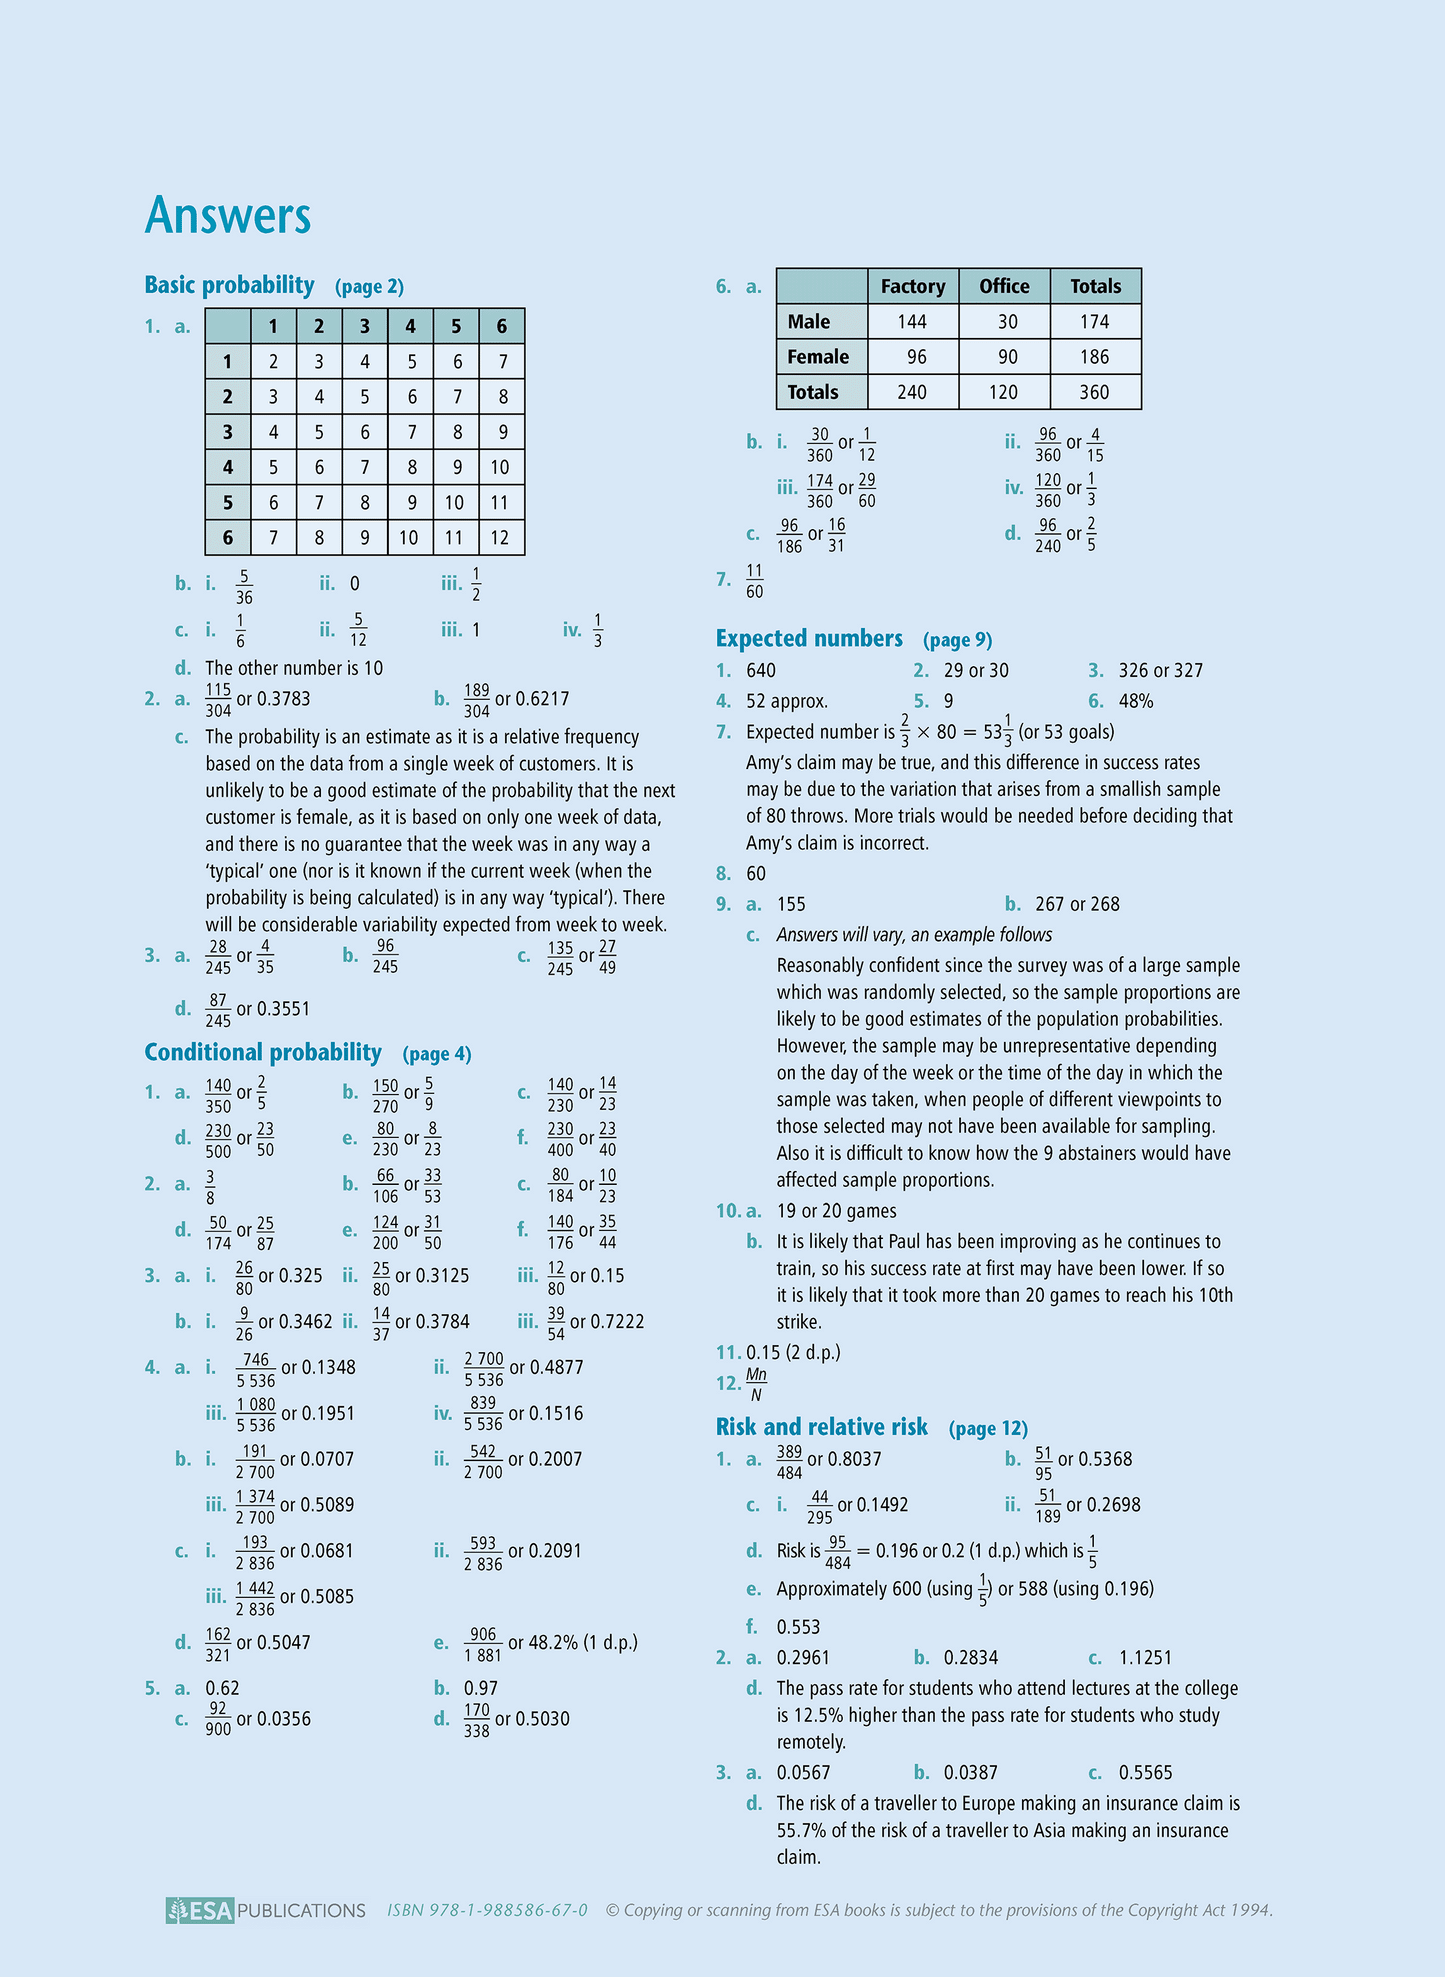 Level 2 Probability 2.12 Learning Workbook